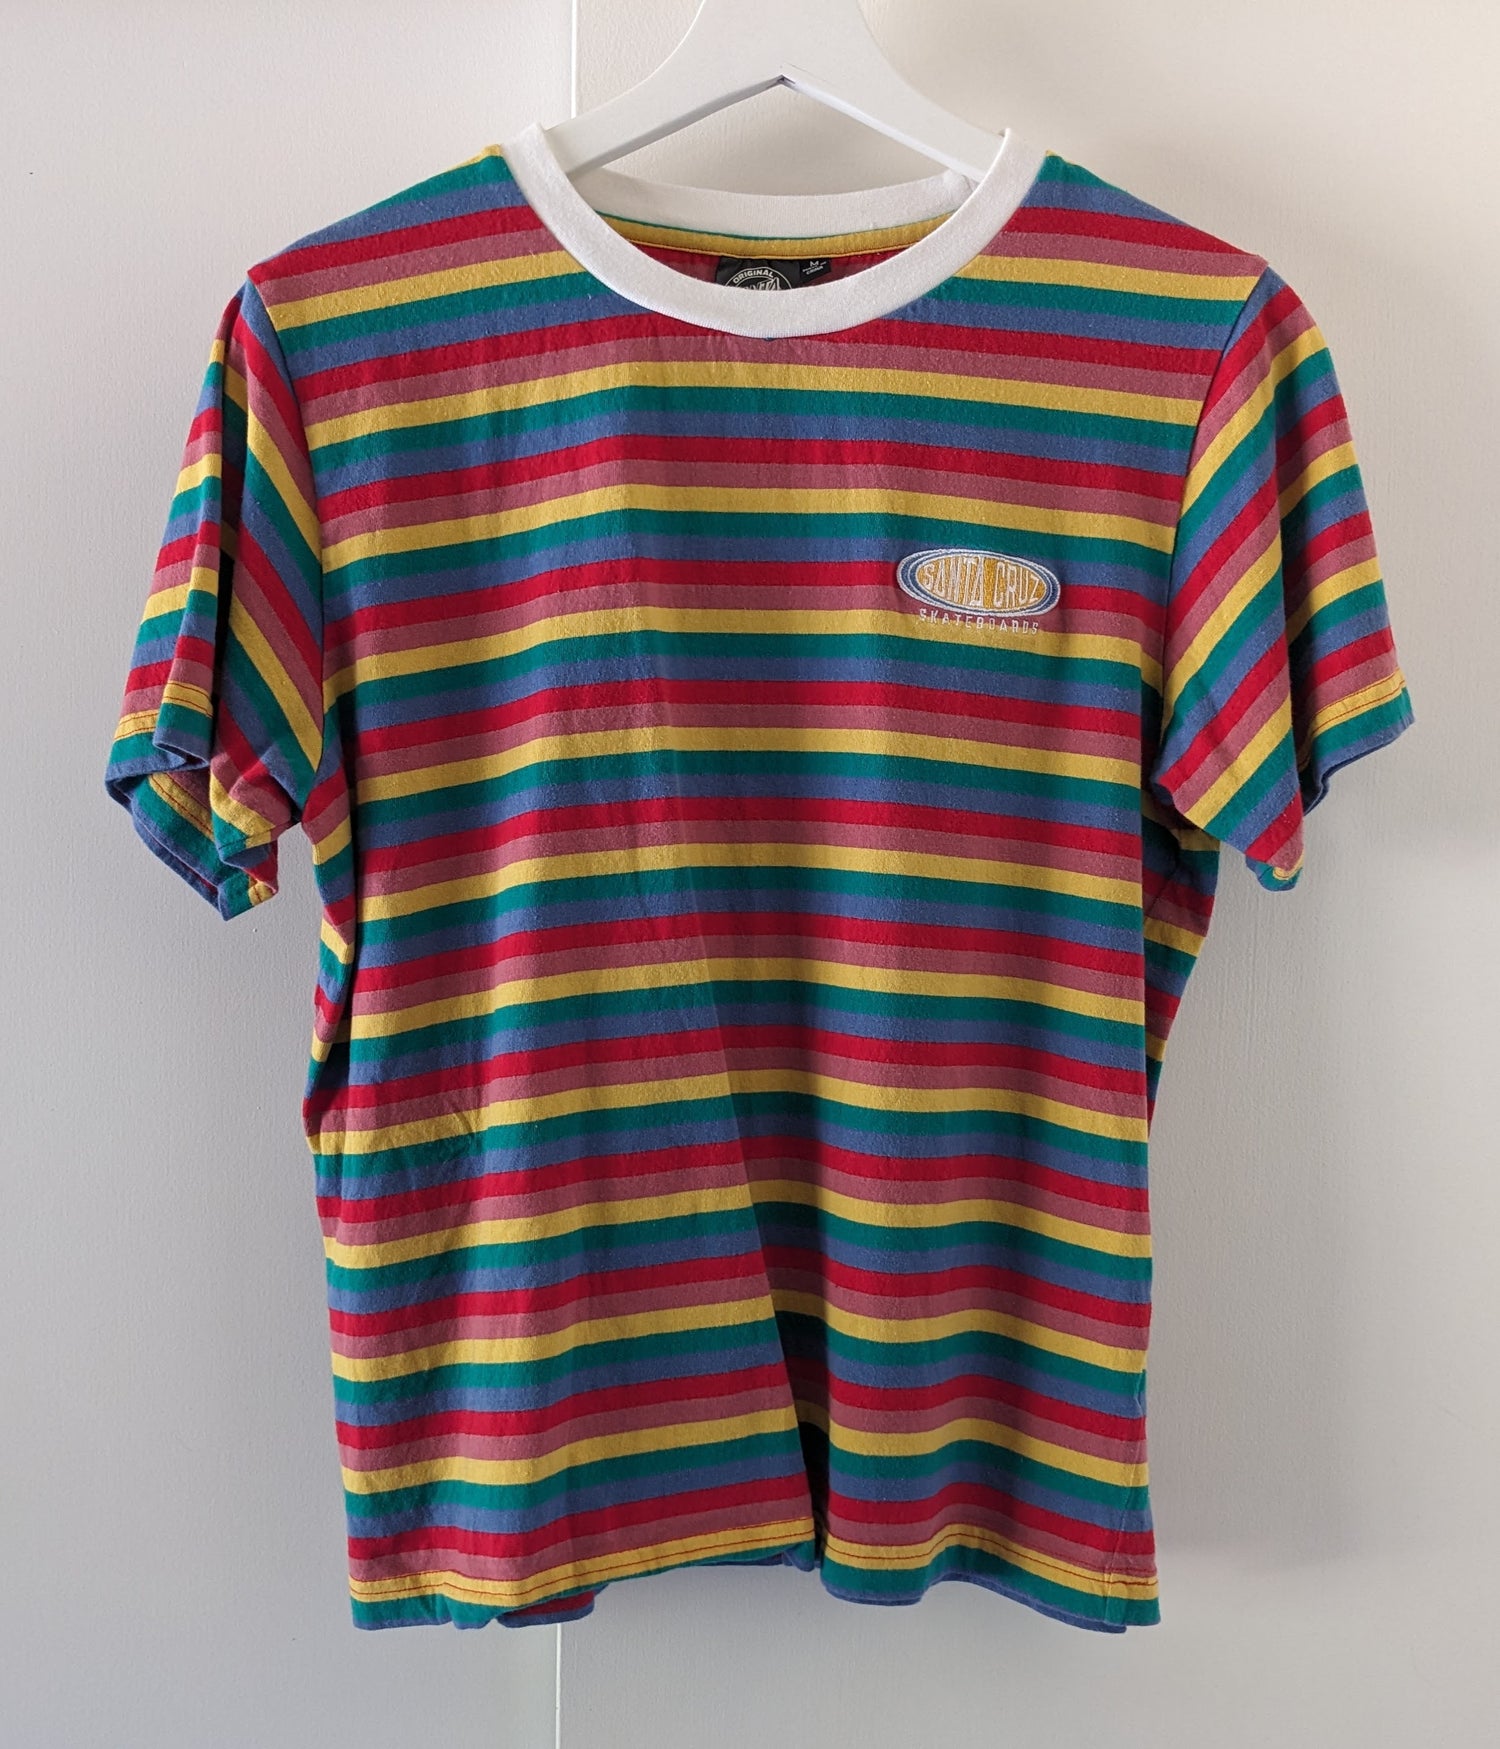 Santa Cruz Rainbow Stripes shirt